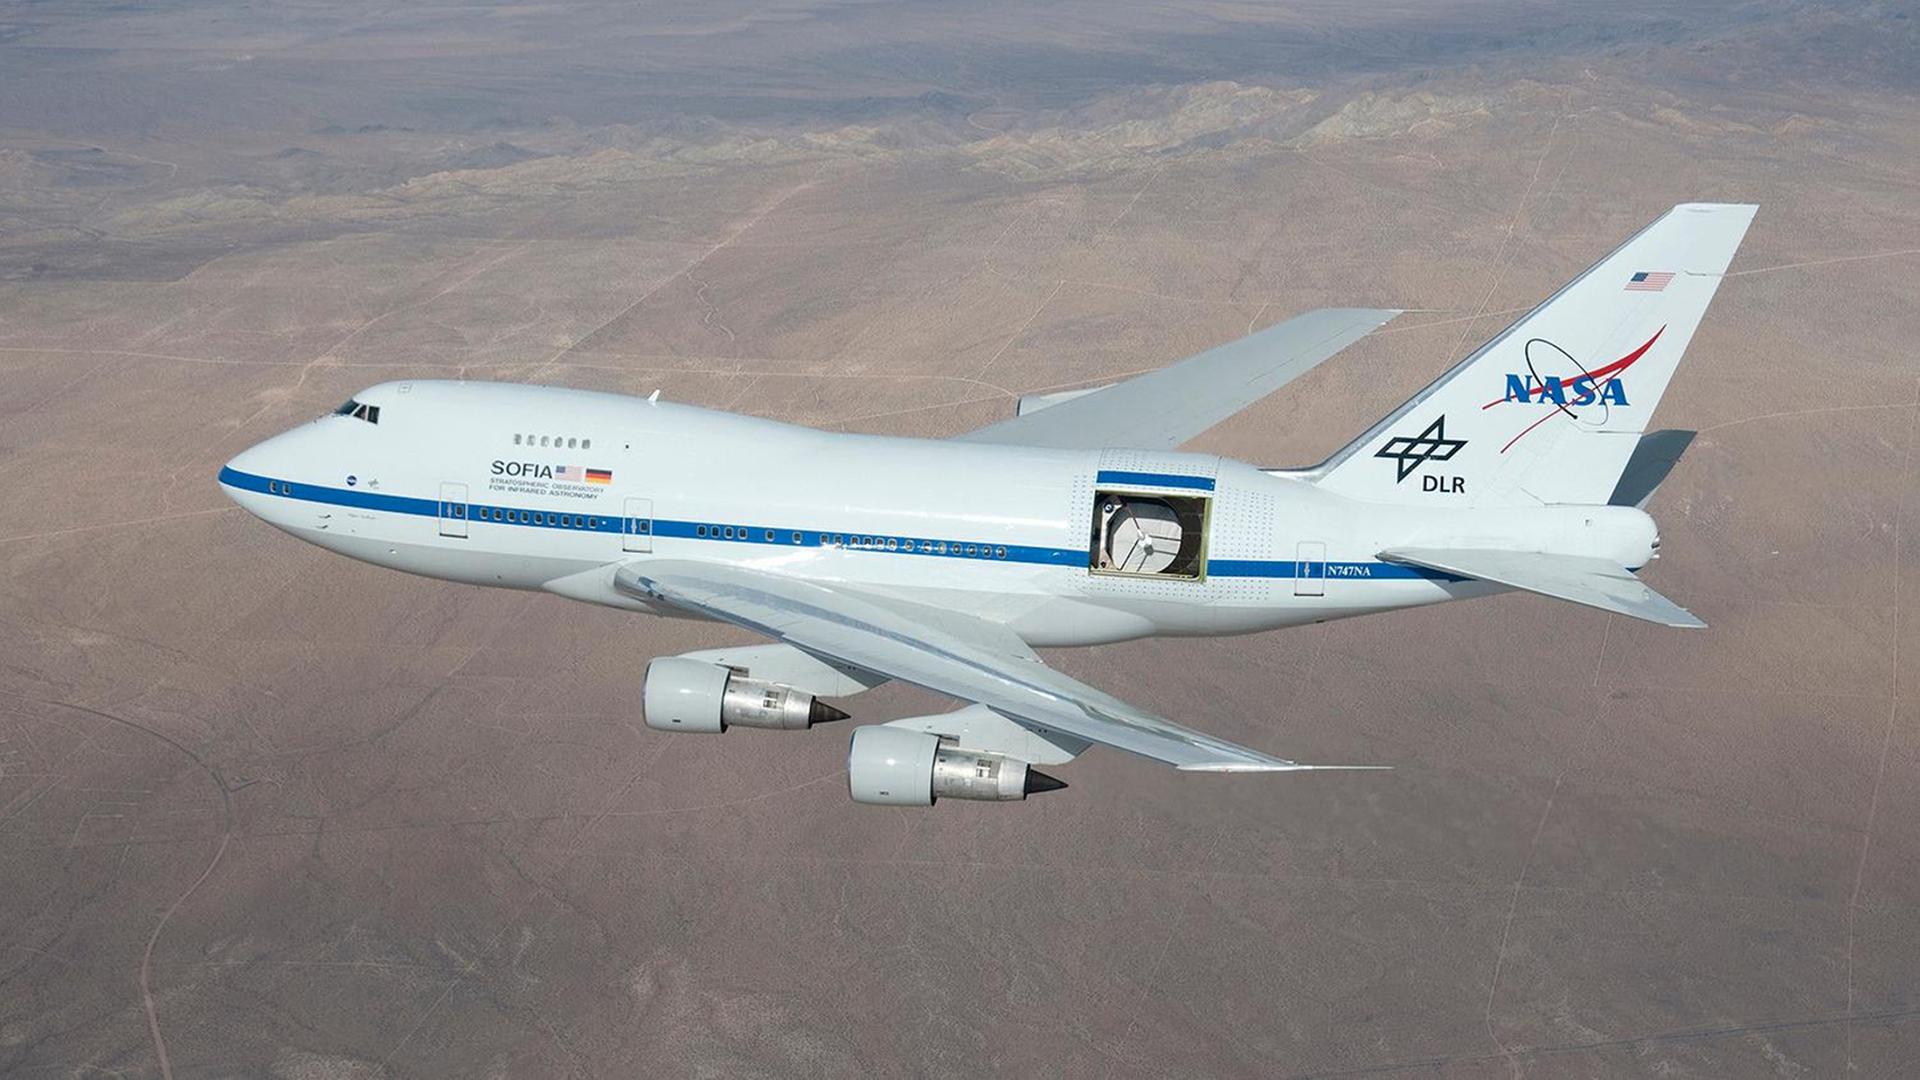 Das Bild zeigt die Infrarot-Sternwarte SOFIA  -  eine umgebaute Boeing 747  im Flug